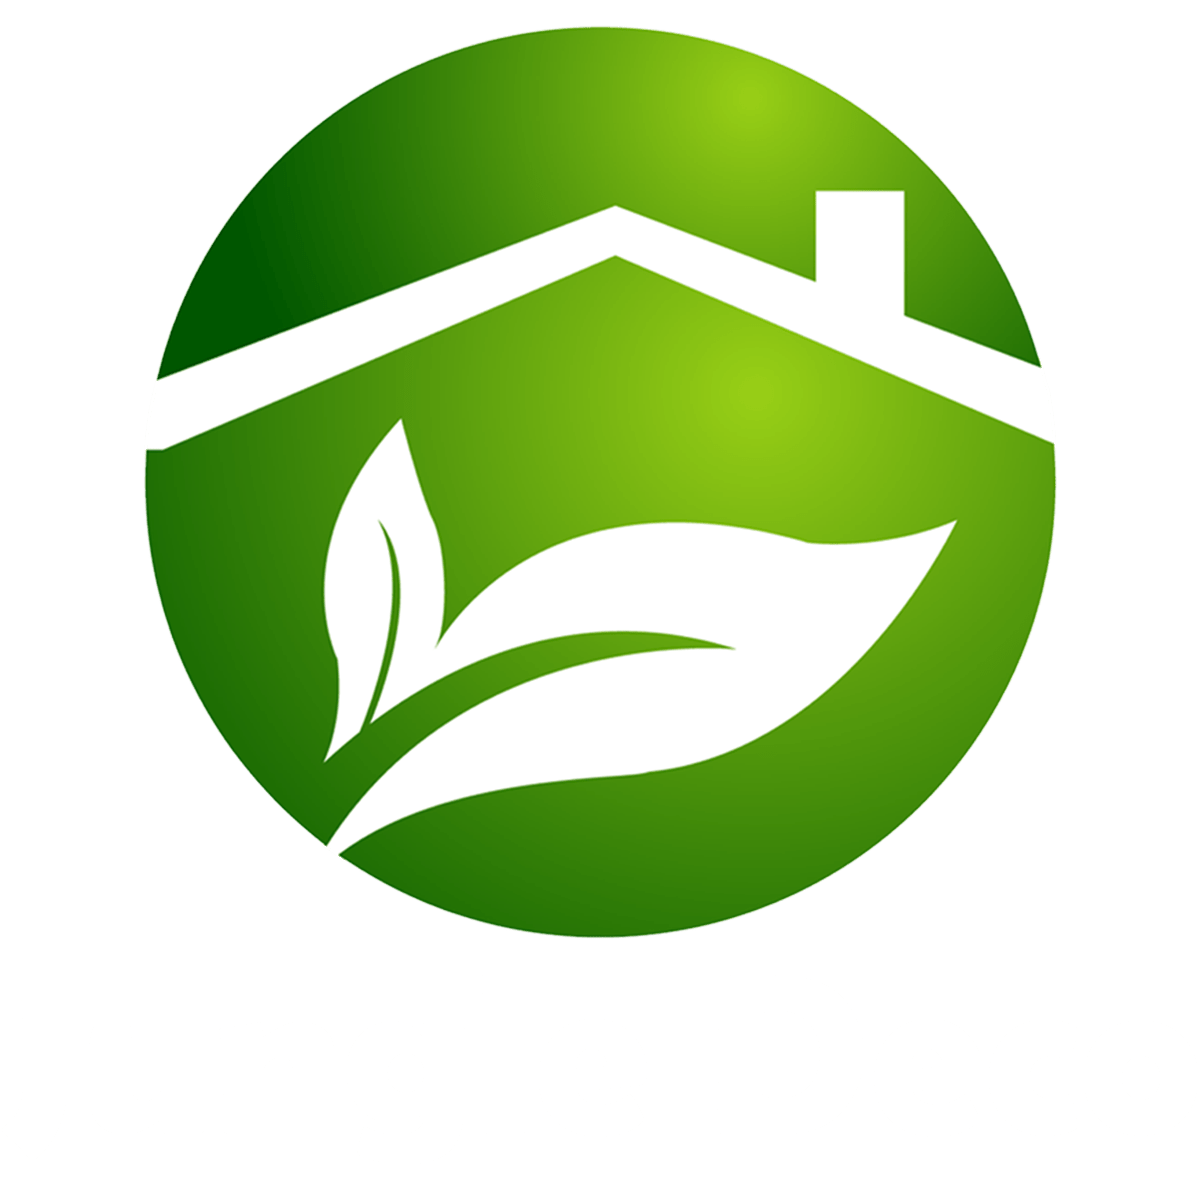 Jungle Deco